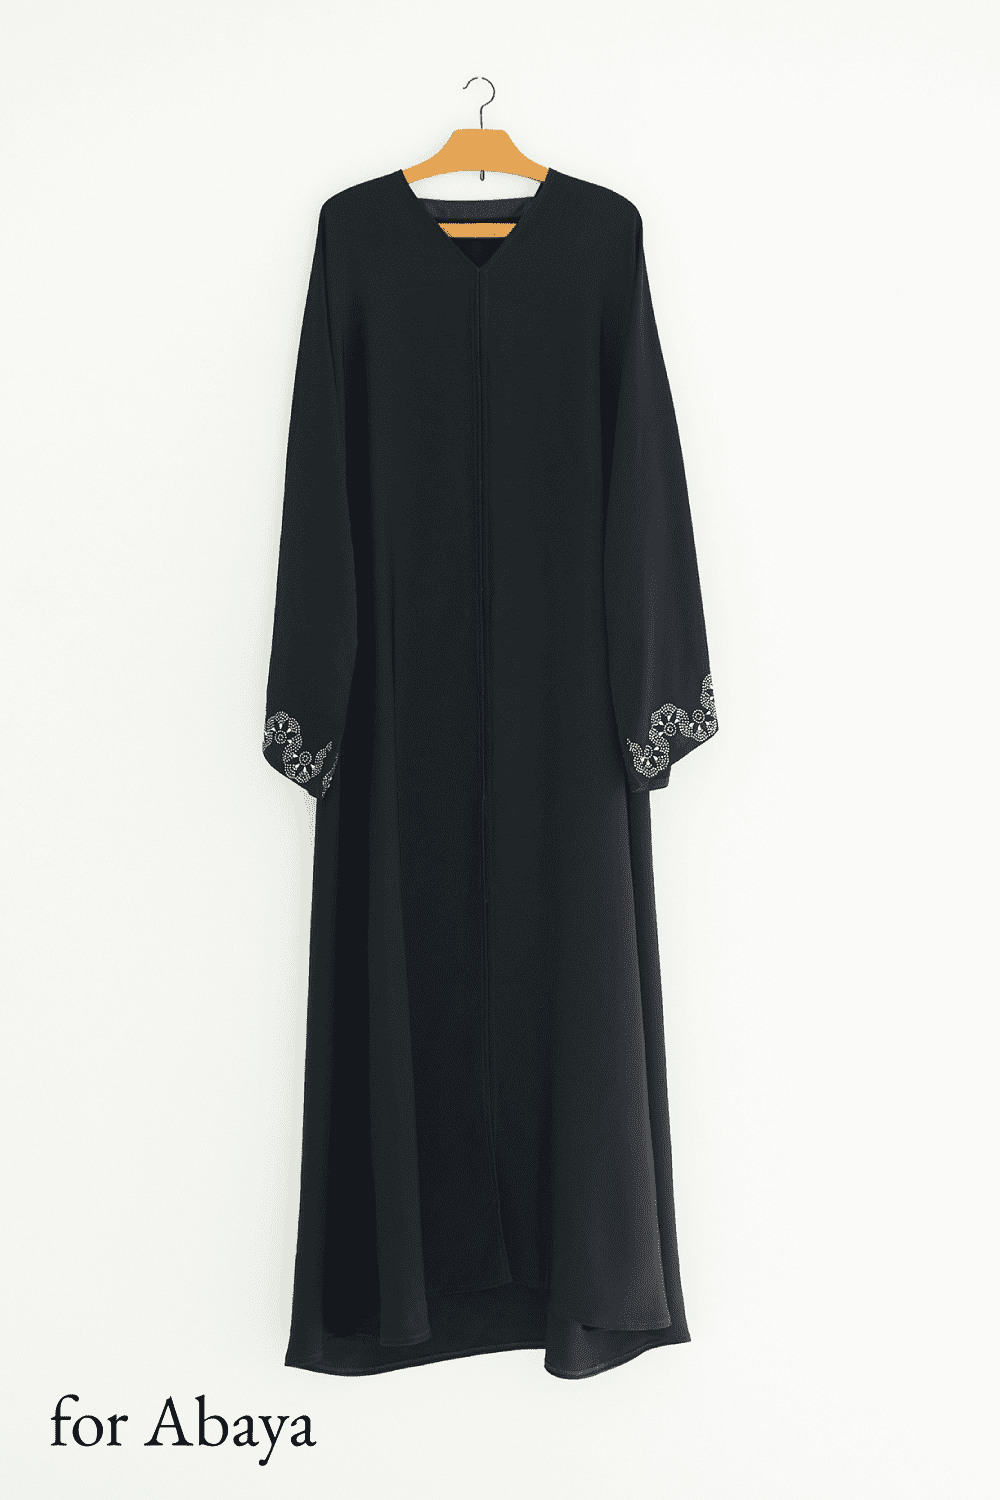 上質な黒色の民族衣装アバヤ